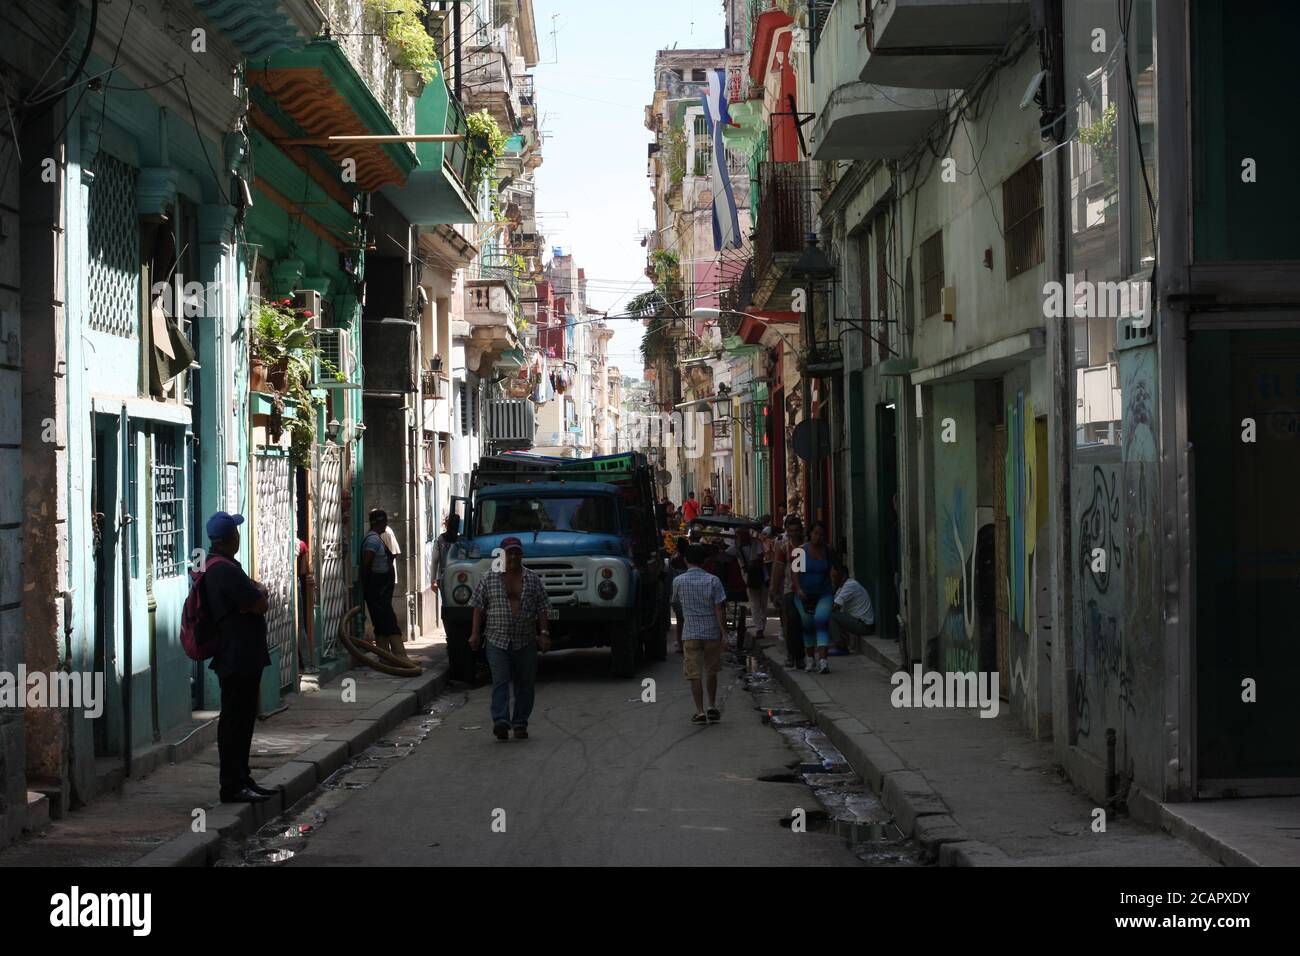 Affollata scena di strada con camion che schiacciano i venditori passati in strada stretta, l'Avana, Cuba Foto Stock